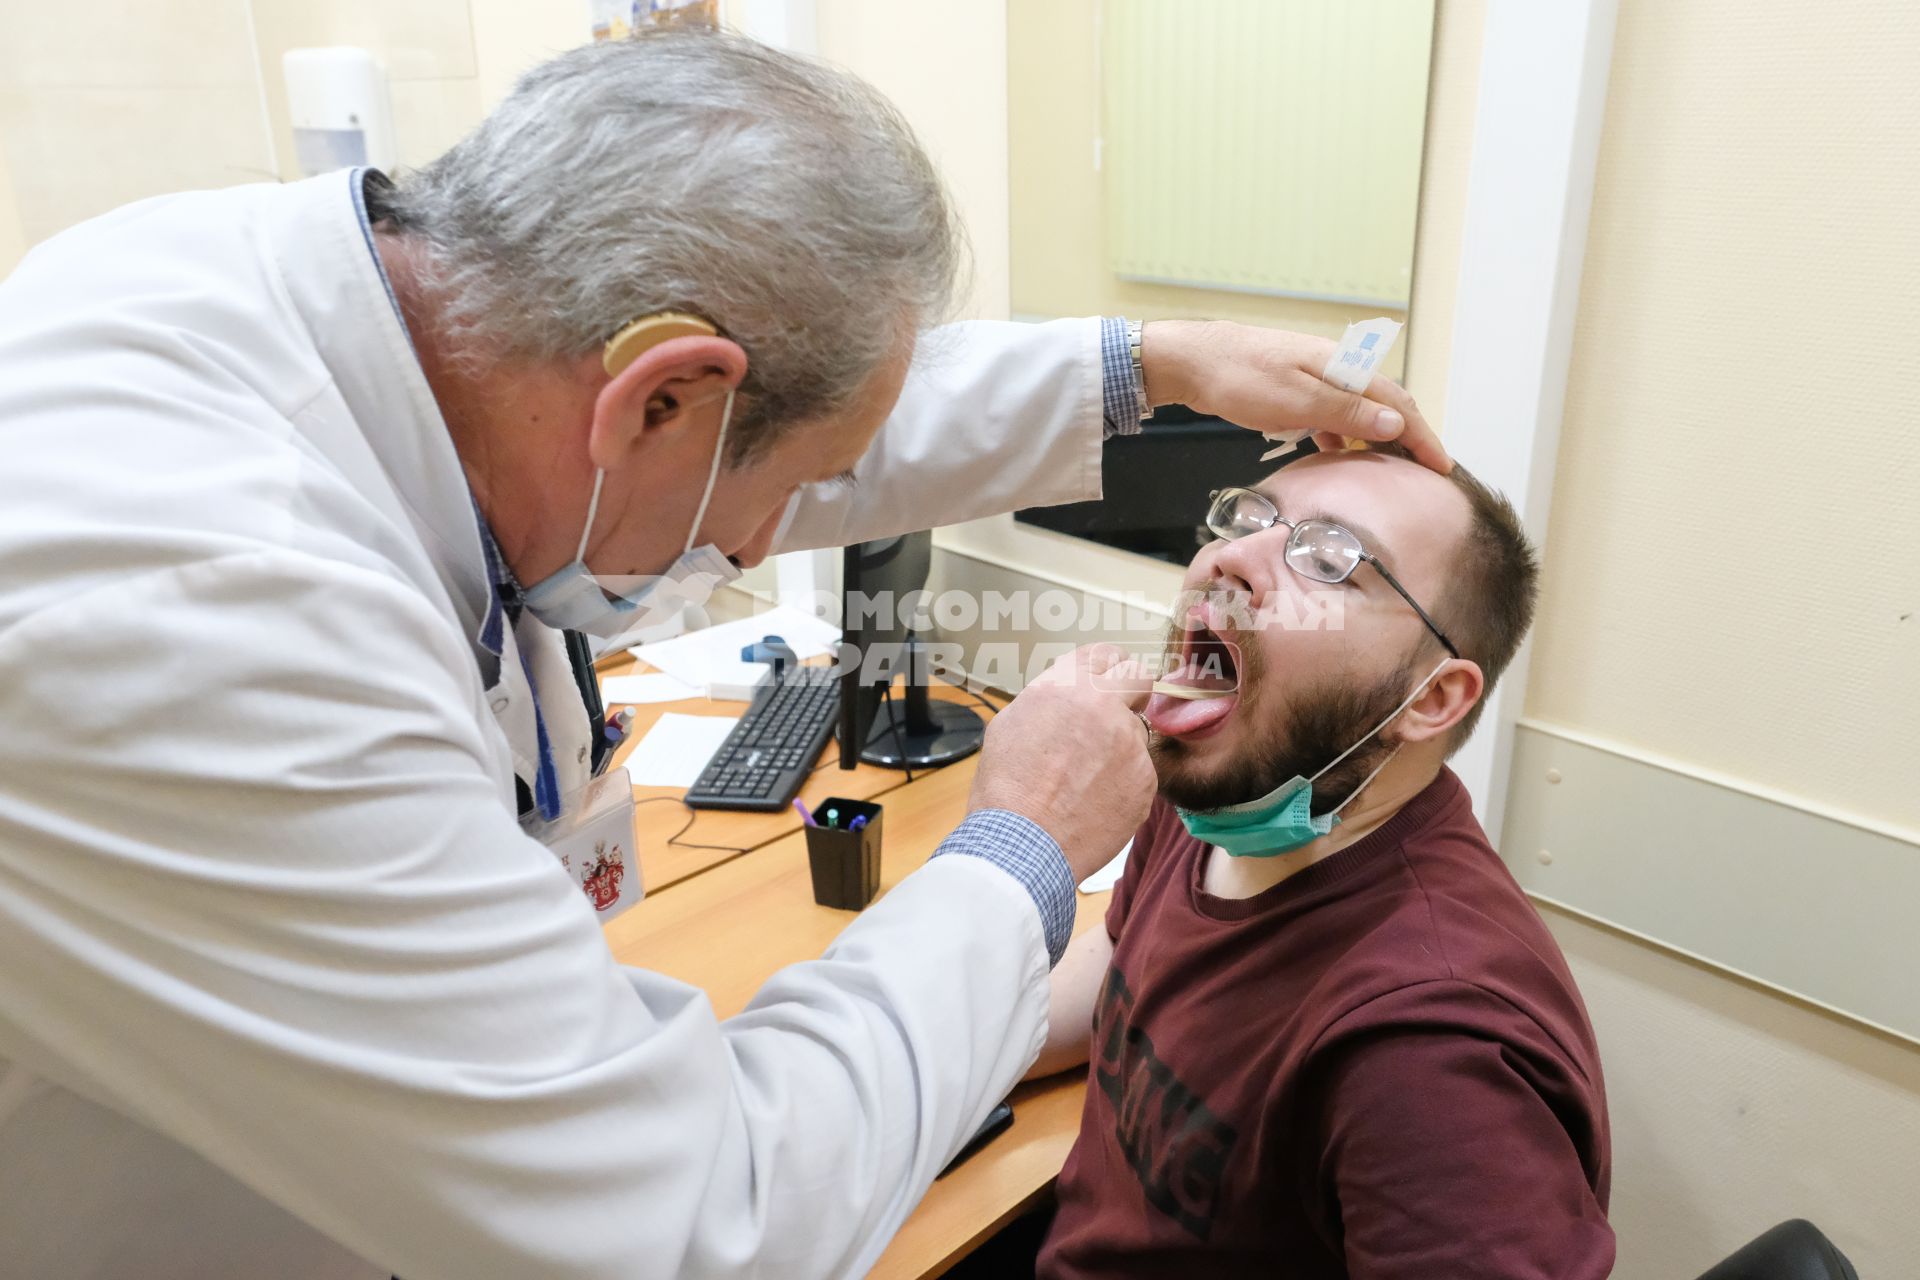 Санкт-Петербург. Врач осматривает мужчину перед вакцинацией от коронавирусной инфекции в поликлинике.